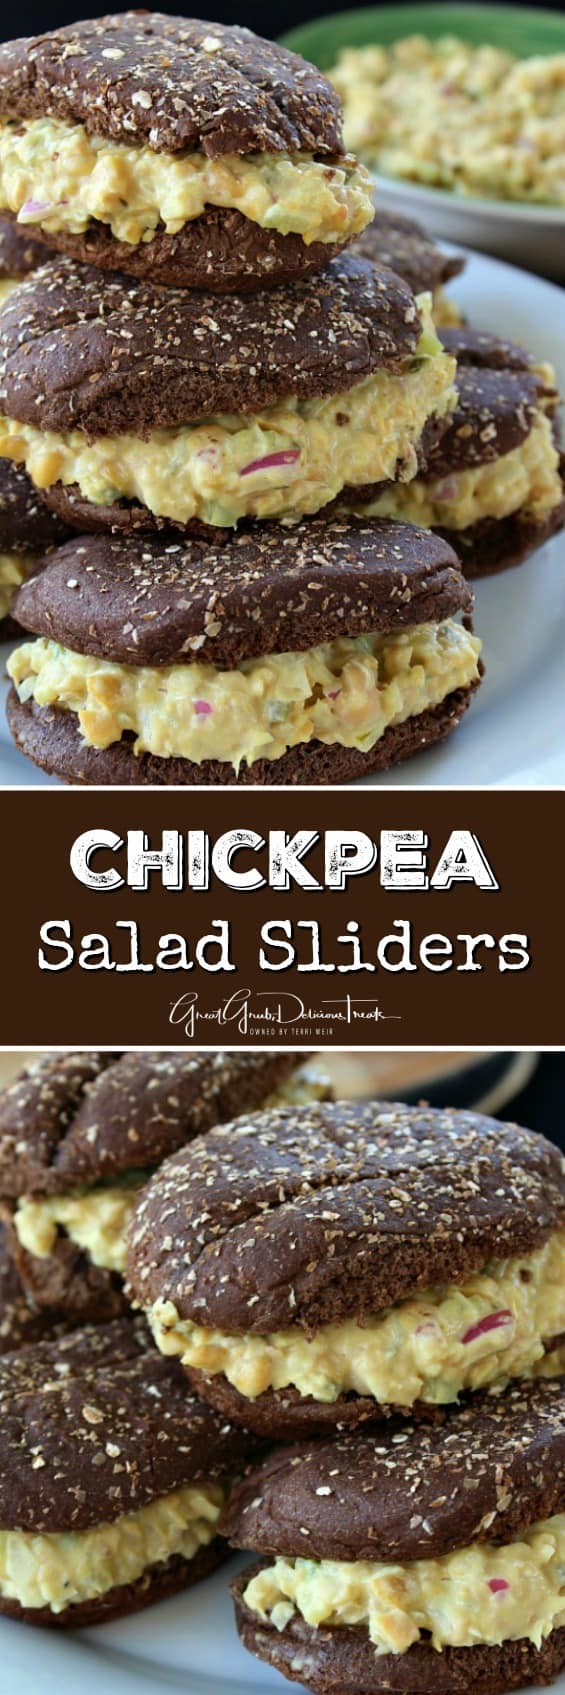 Chickpea Salad Sliders